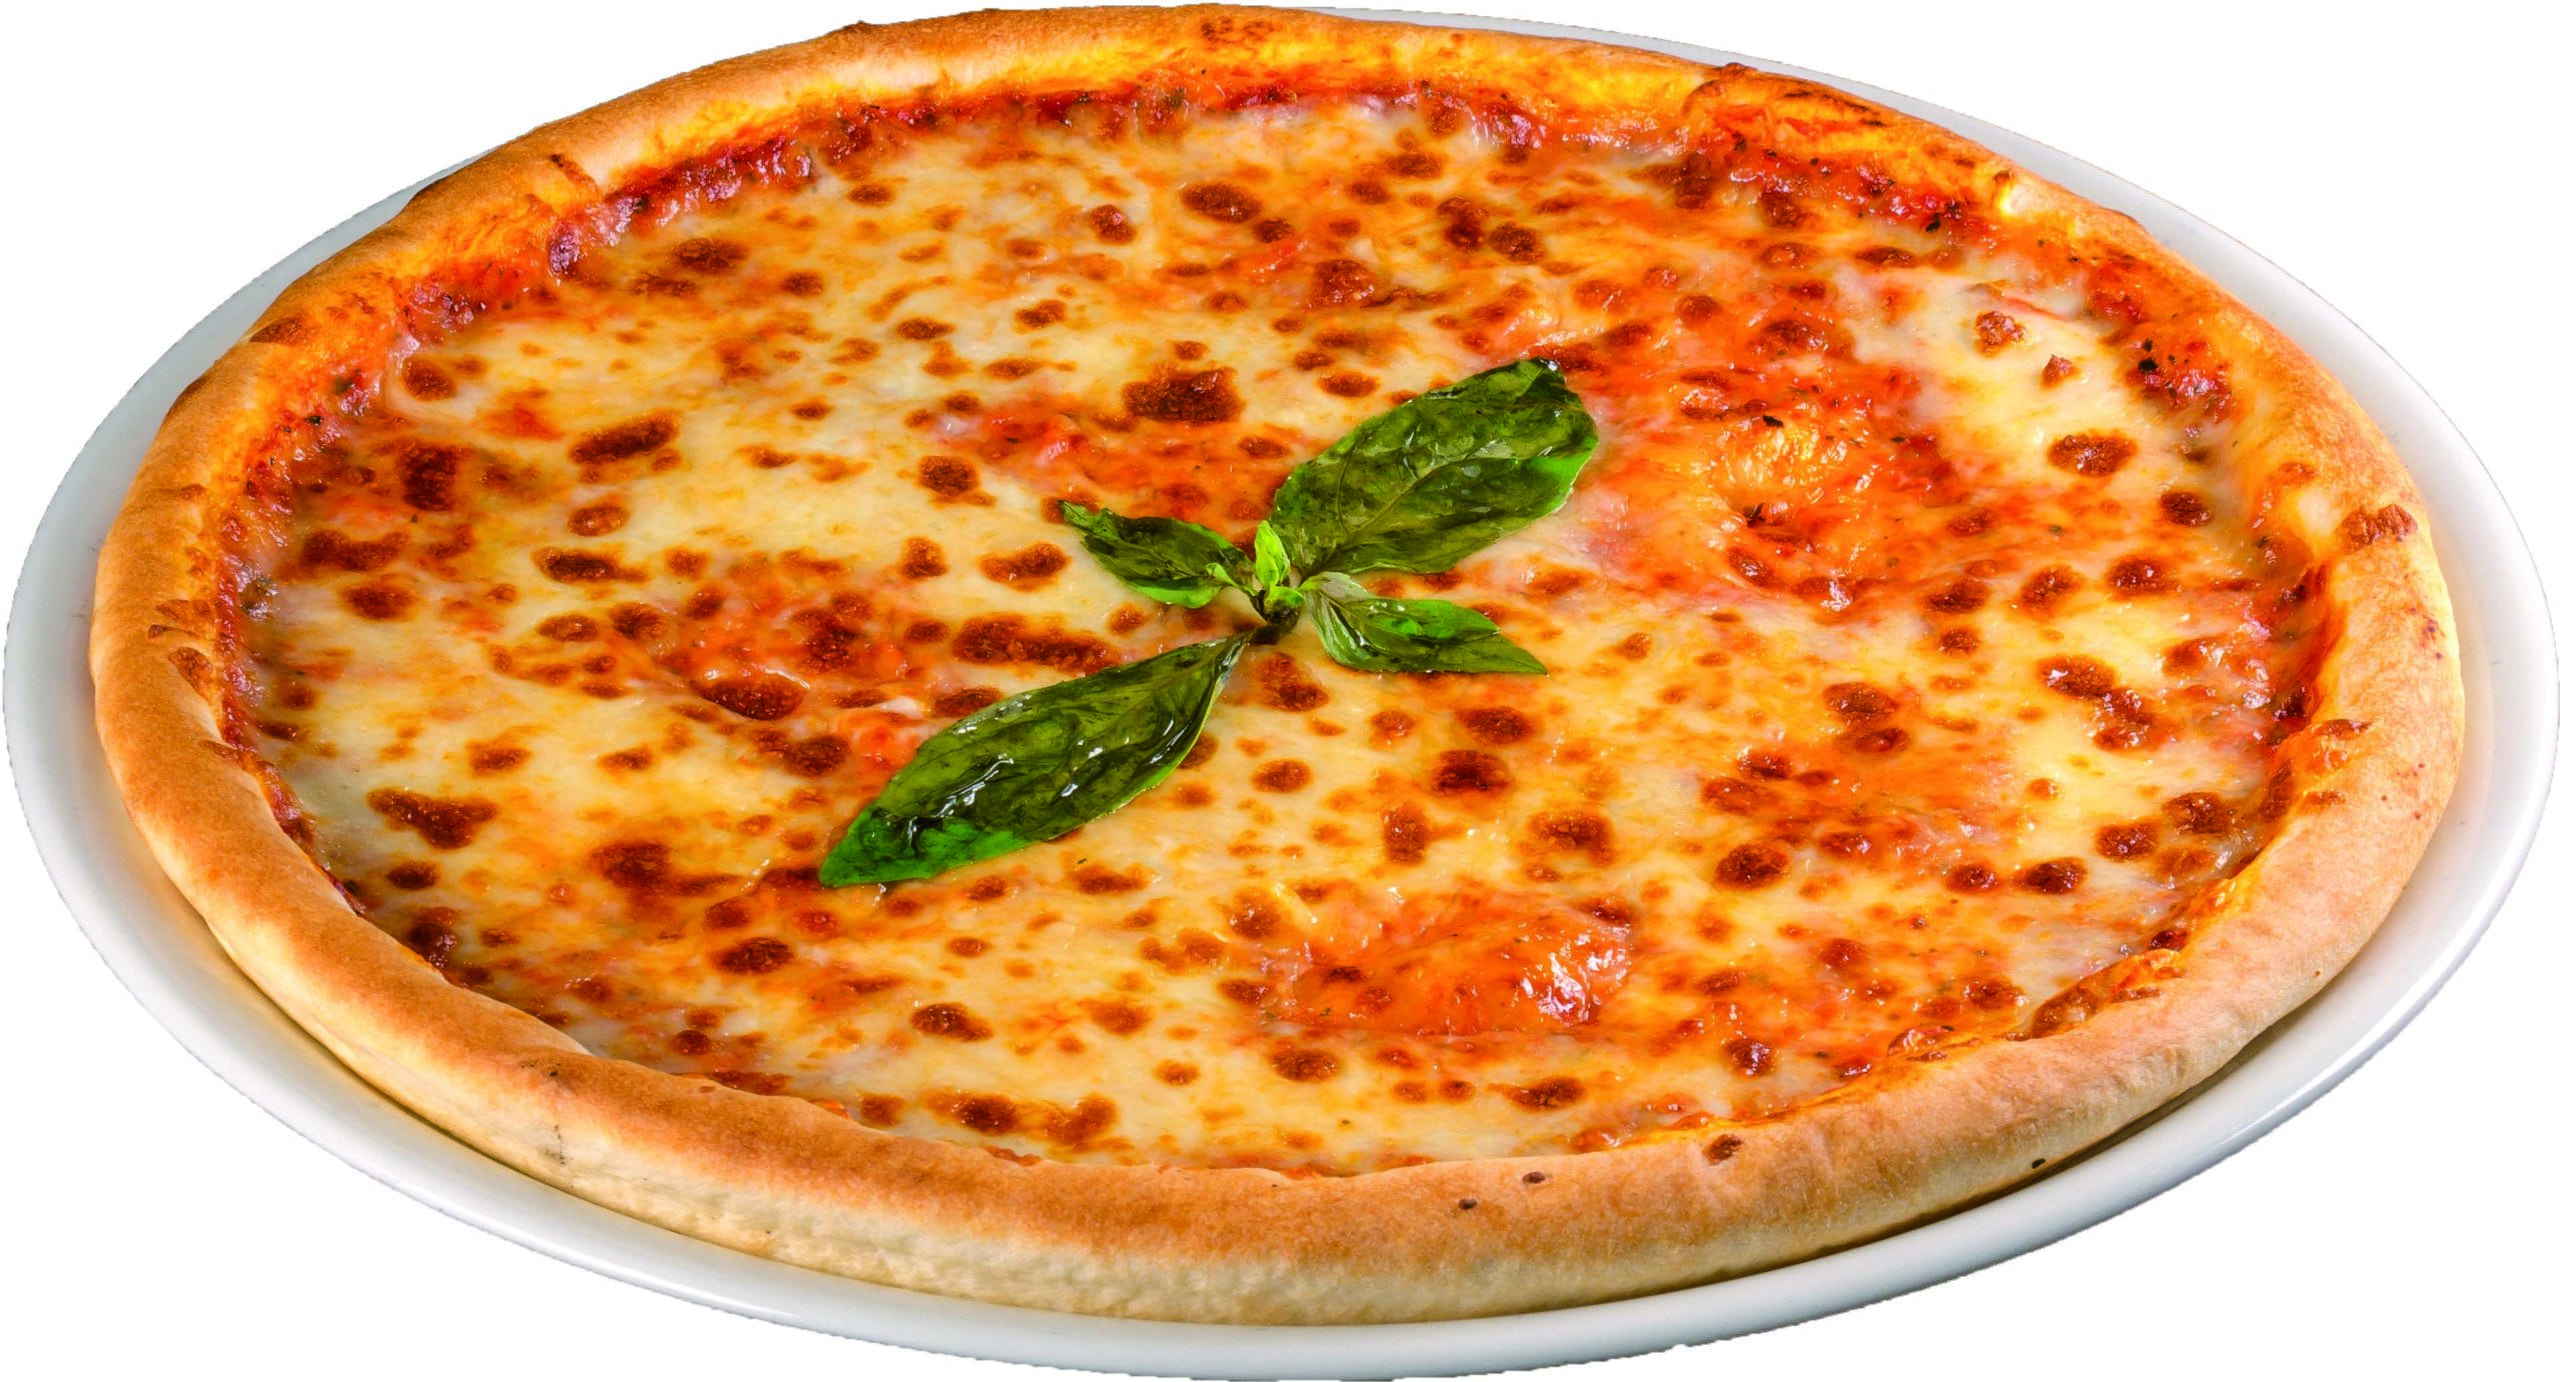 PizzaMargareta